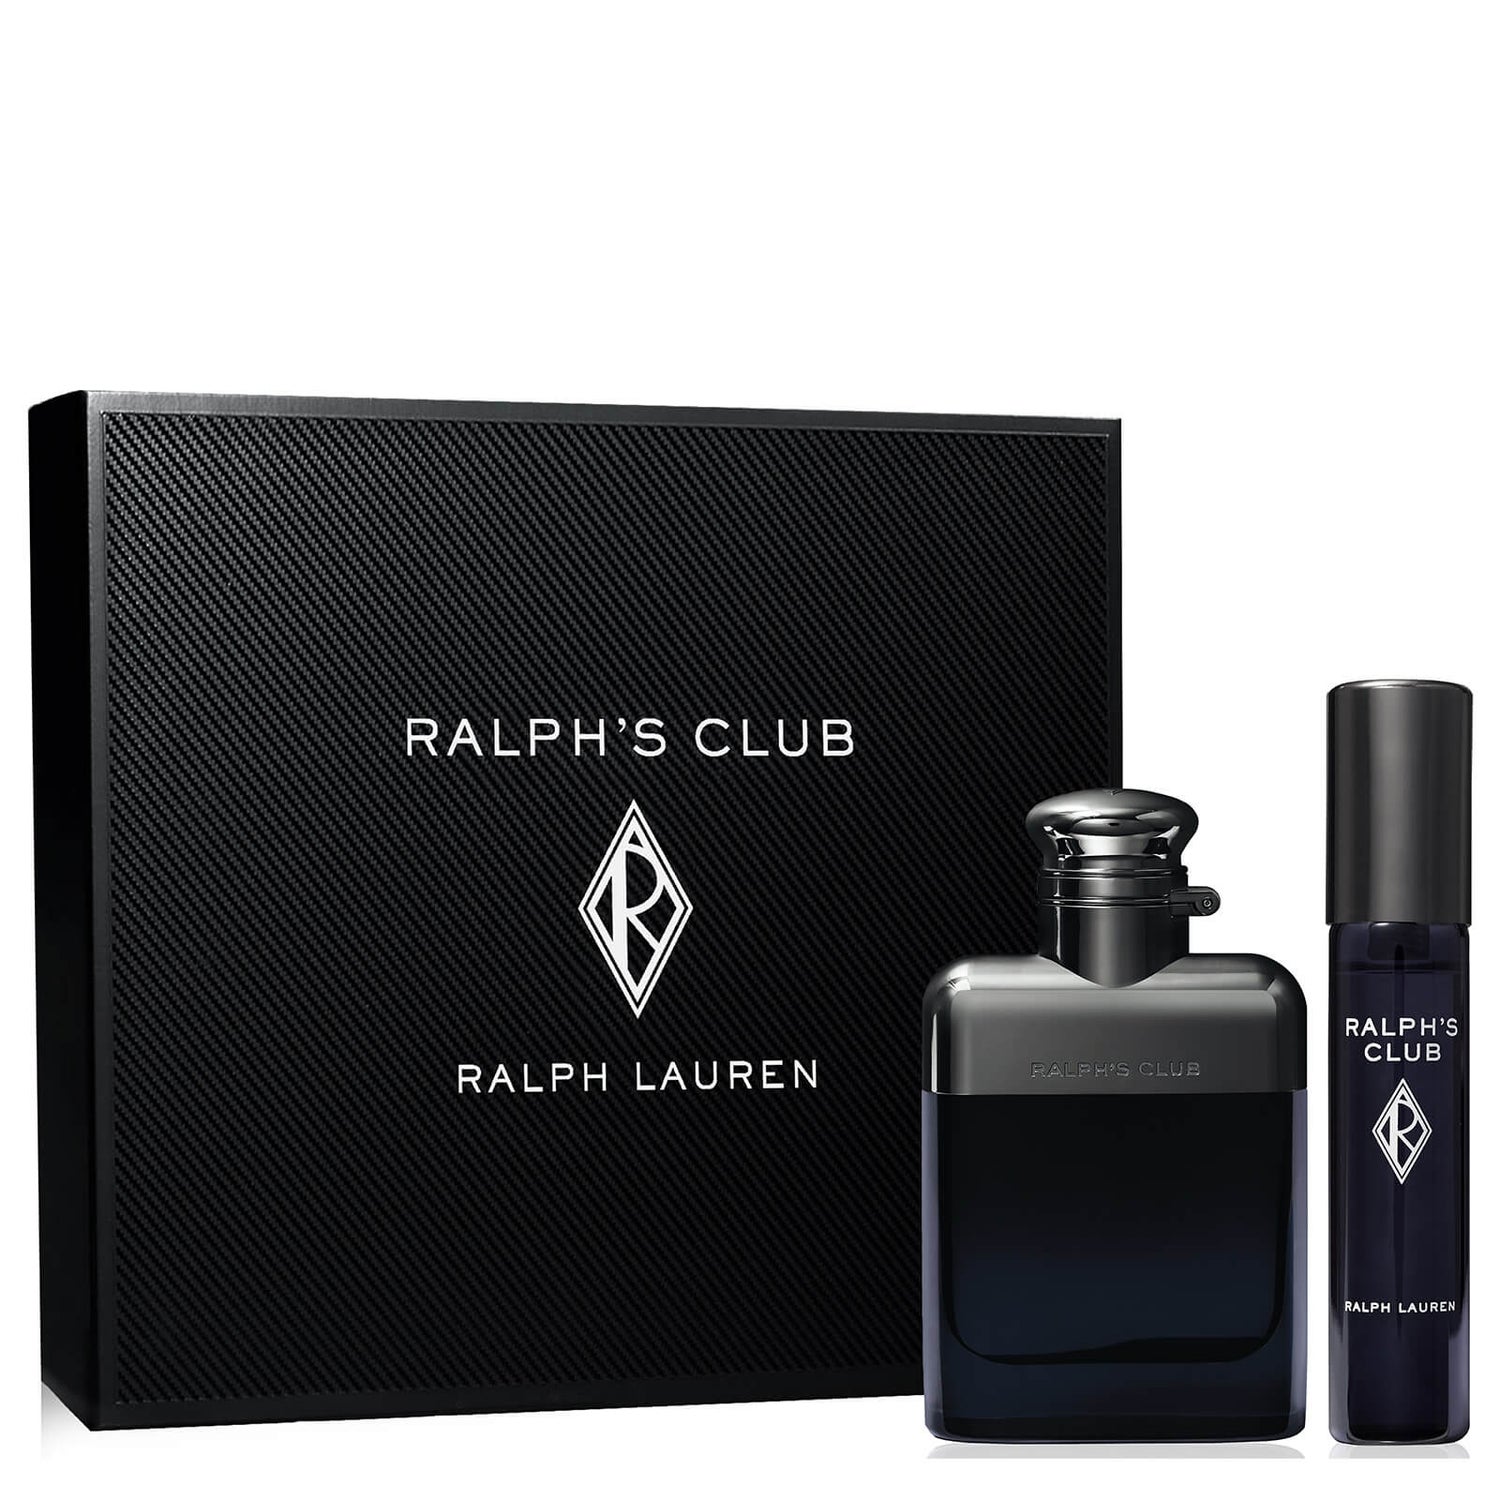 Ralph Lauren Ralph's Club Eau de Toilette Geschenkset 50ml (ter waarde van €64,00)